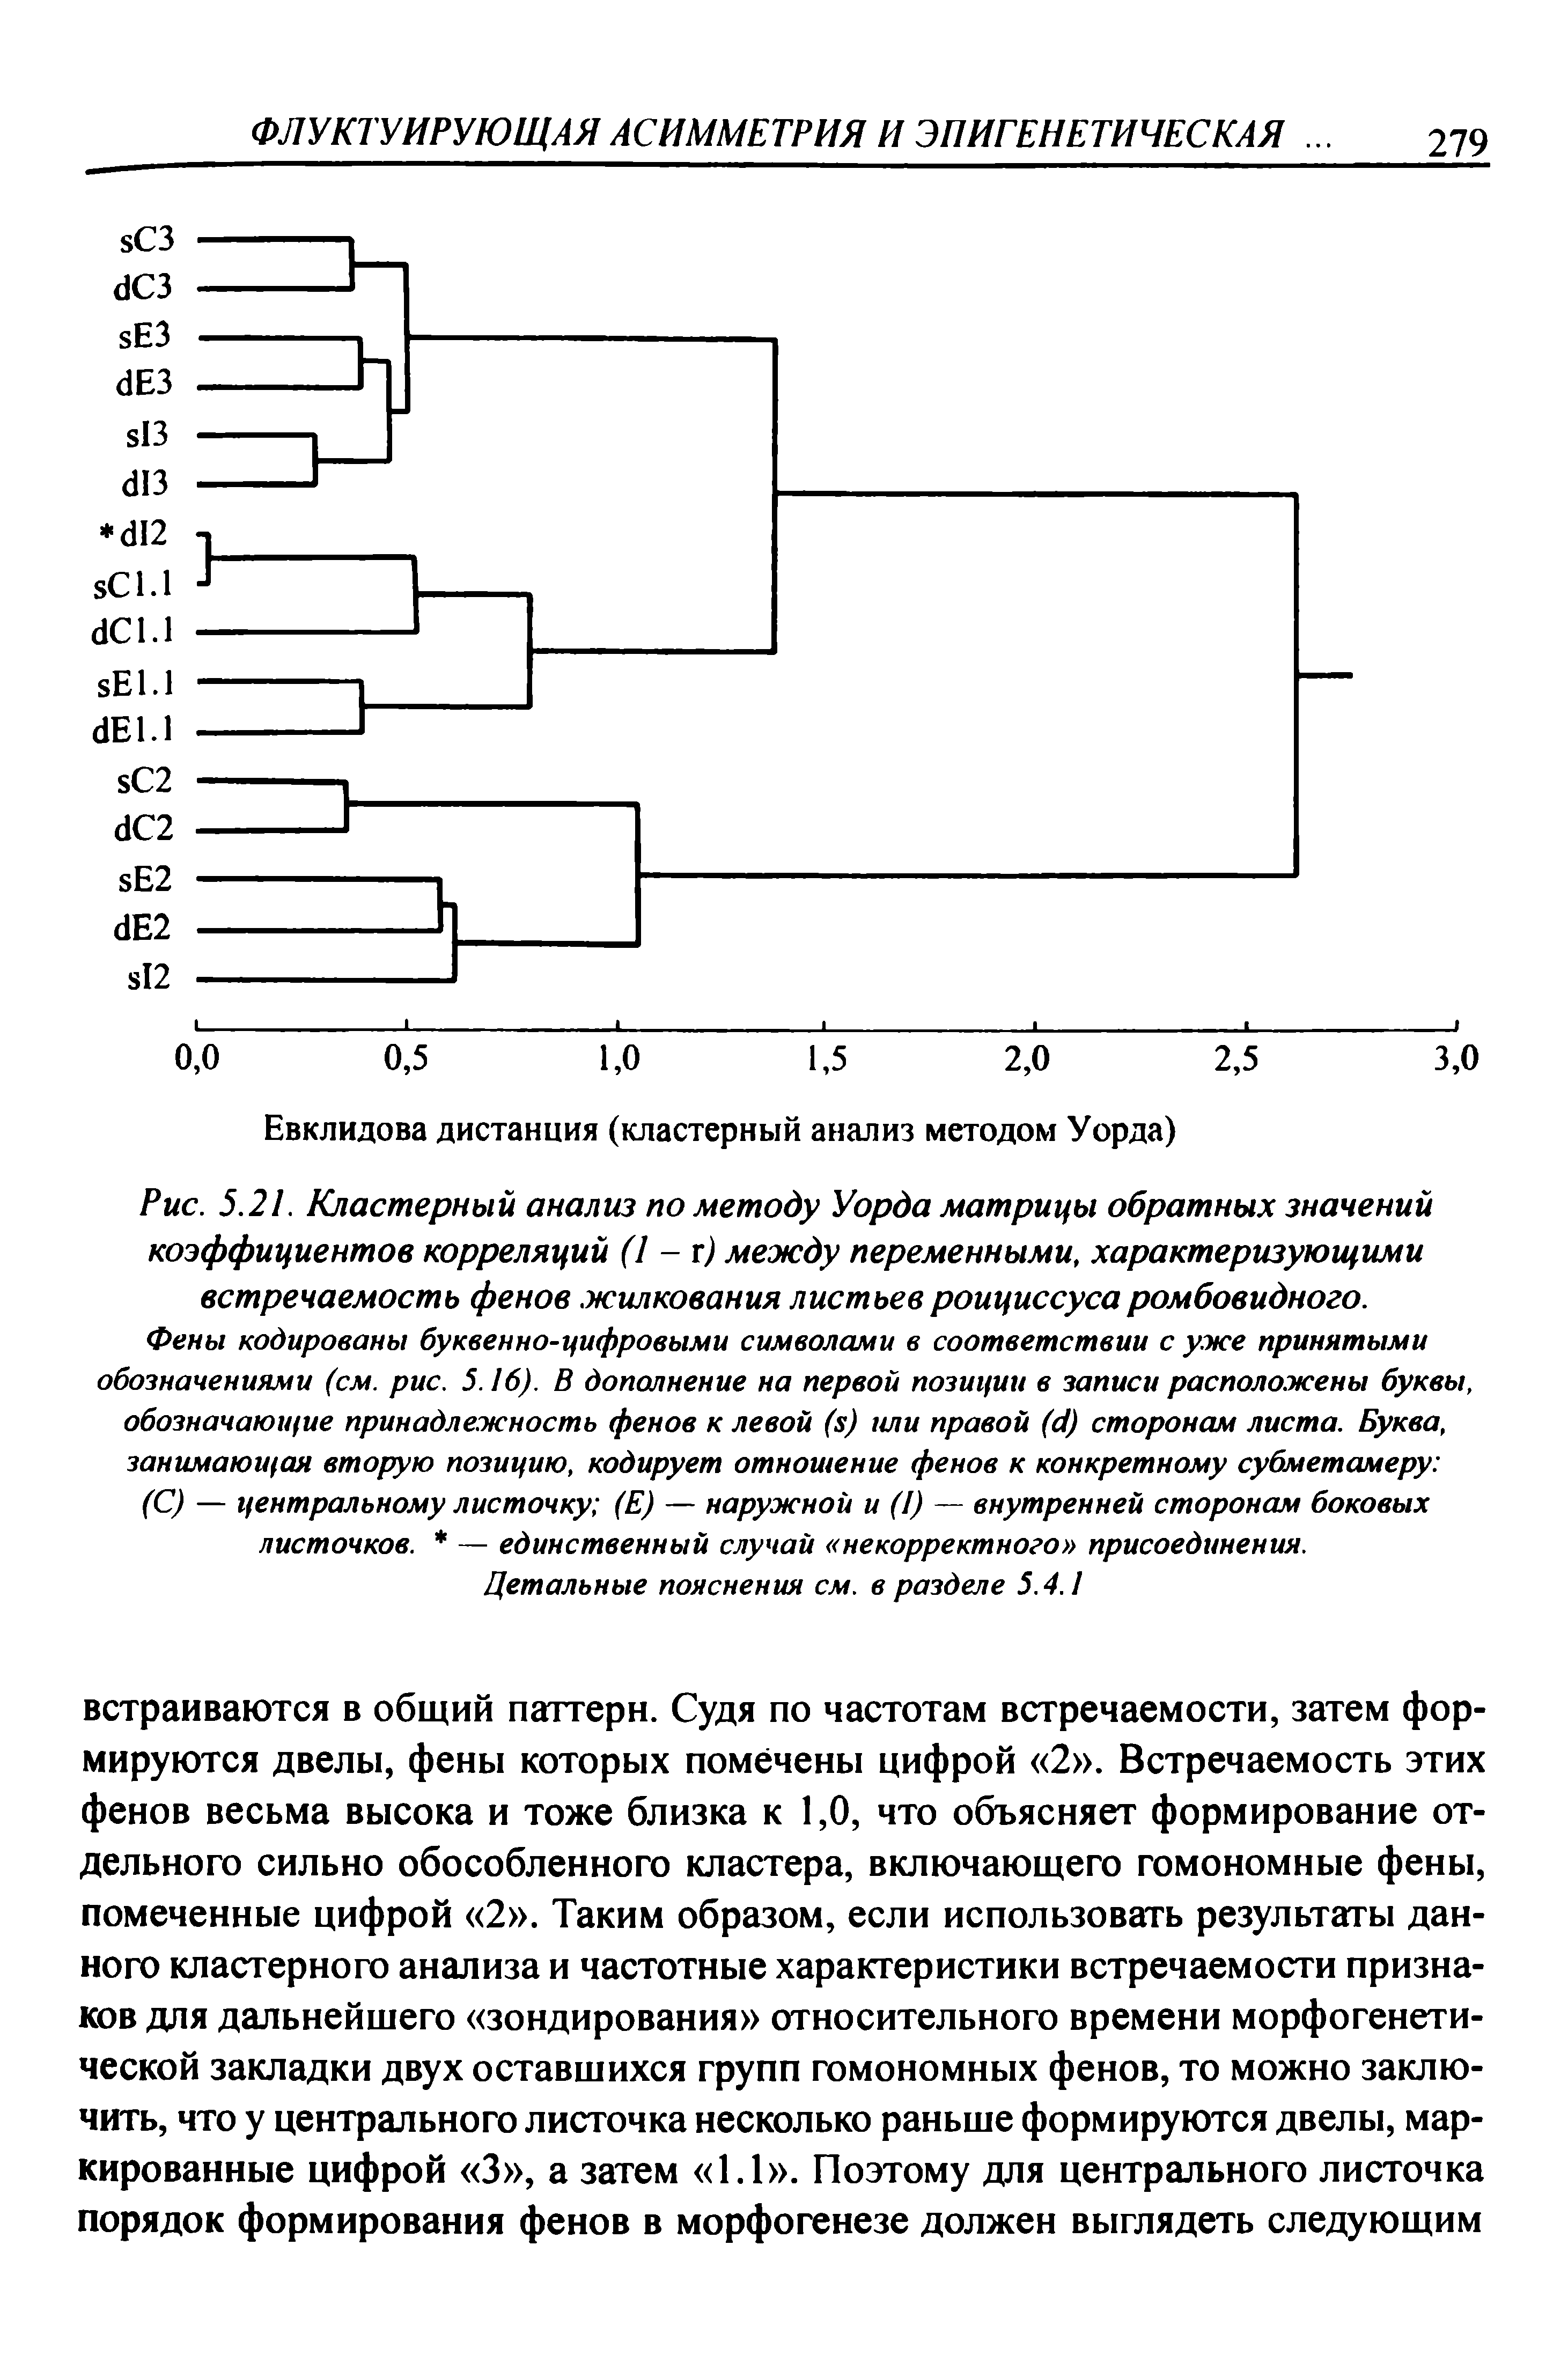 Рис. 5.21. Кластерный анализ по методу Уорда матрицы обратных значений коэффициентов корреляций (1 - г) между переменными, характеризующими встречаемость фенов жилкования листьев роициссусаромбовидного.